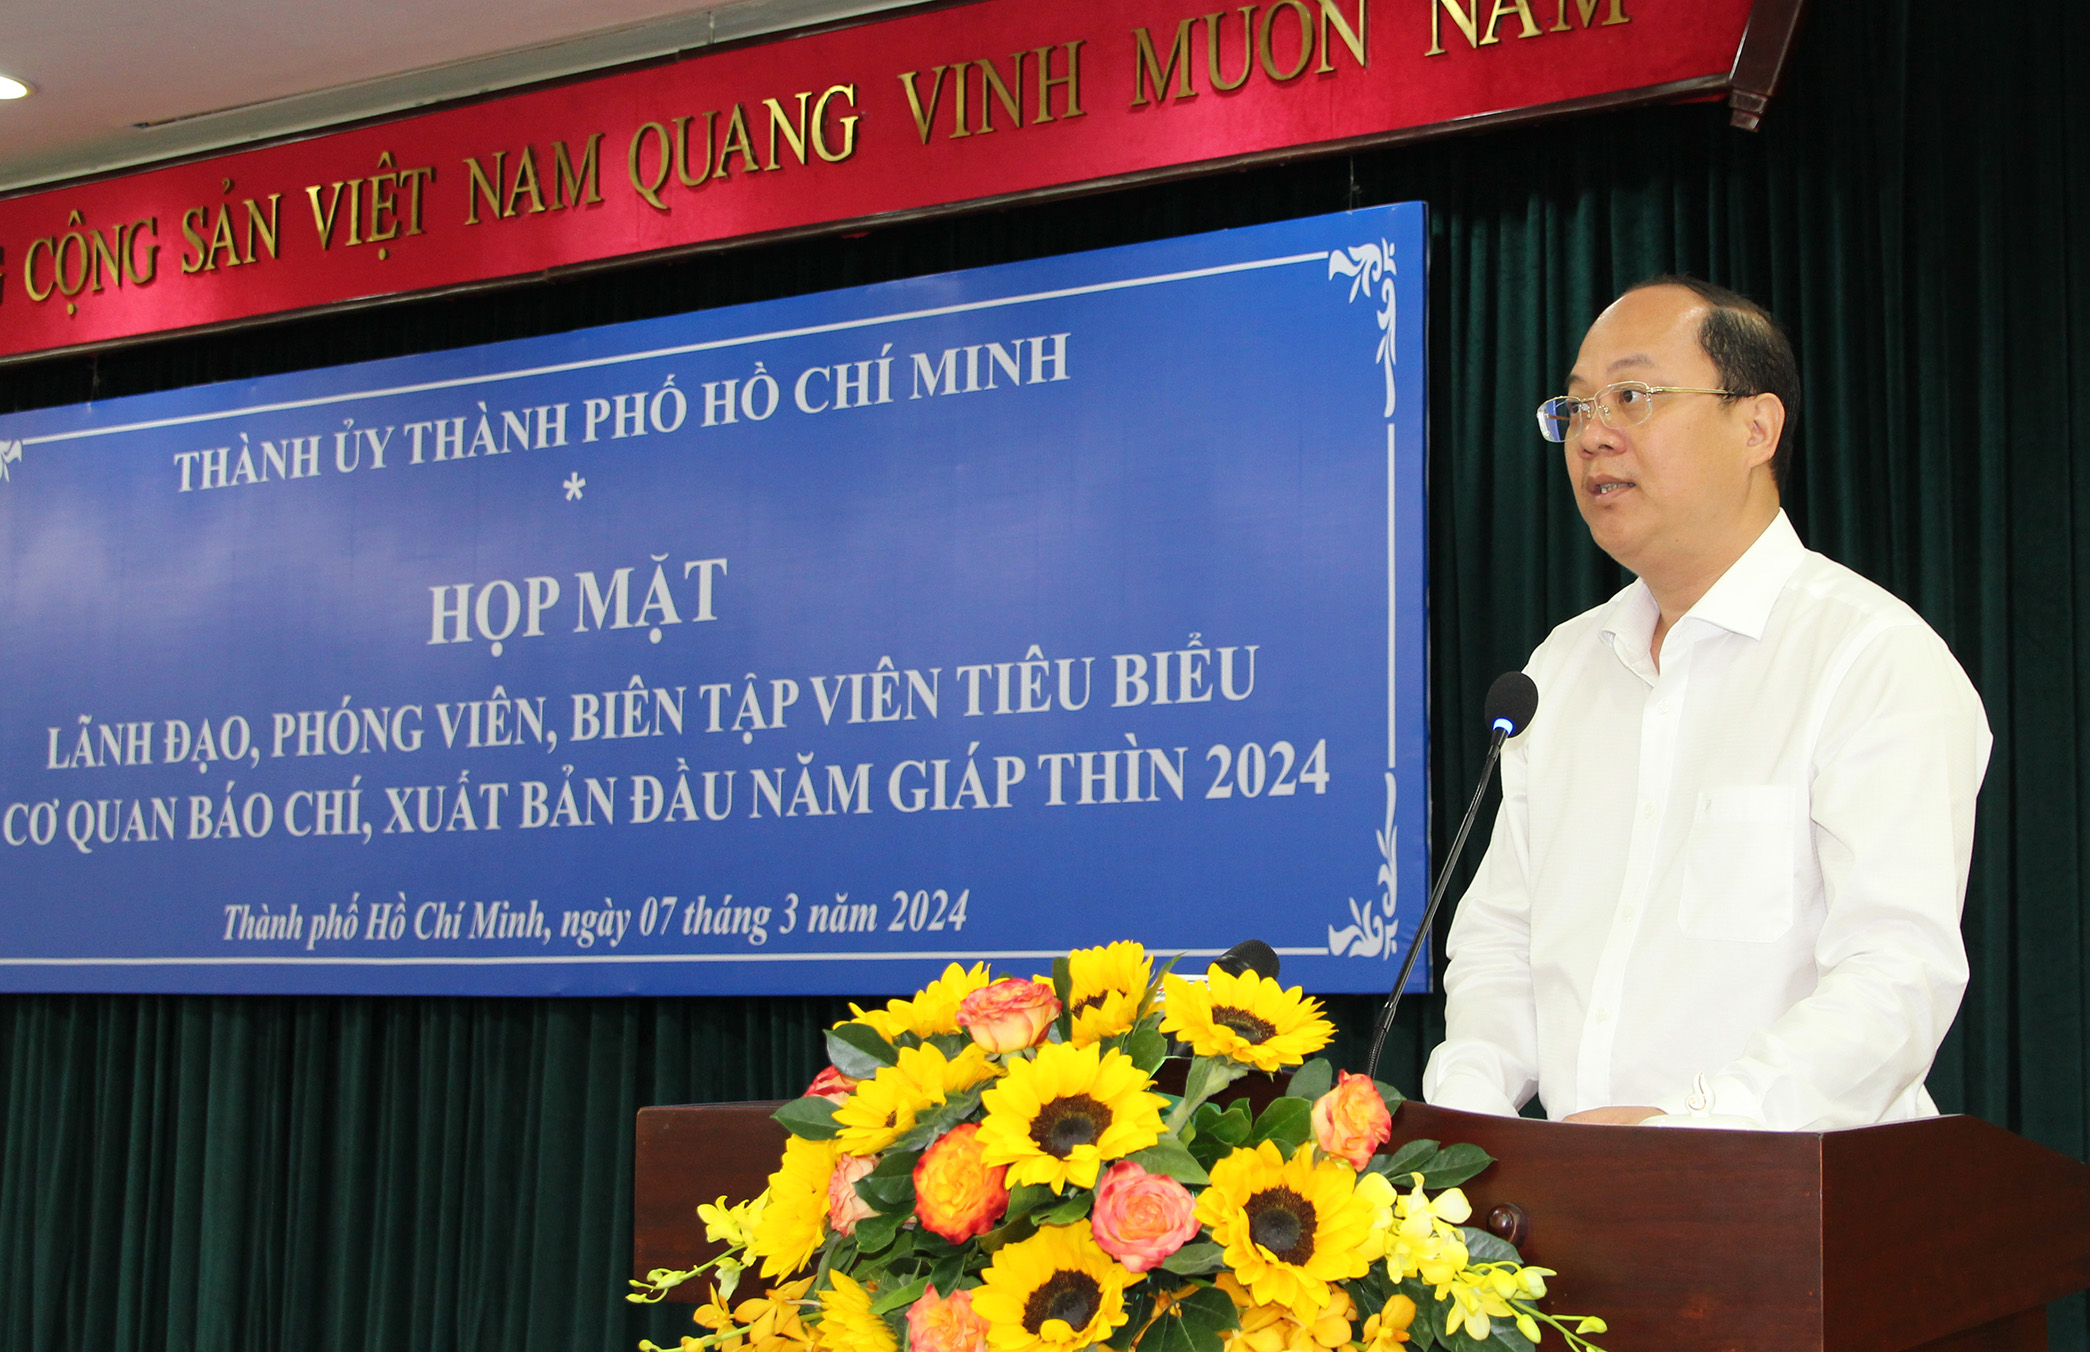 Đồng chí Nguyễn Hồ Hải, Phó Bí thư Thường trực Thành ủy TP. Hồ Chí Minh phát biểu tại buổi họp mặt báo chí (Ảnh: H.Hào).